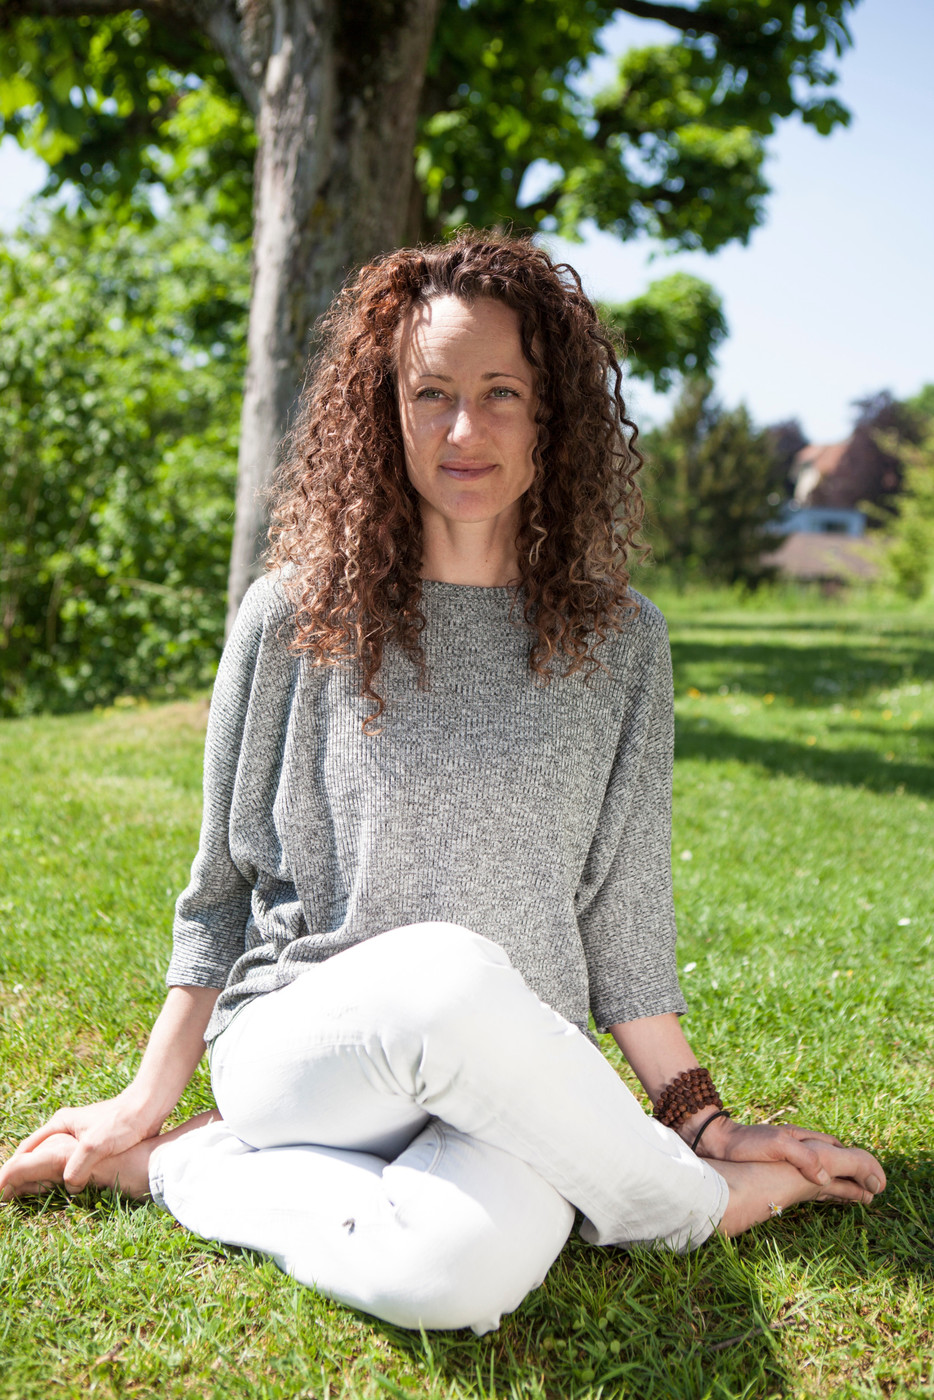 Melanie Kreuzer bietet am Freitag von 10.30 bis 12 Uhr und von 13.30 bis 15 Uhr Yoga an.